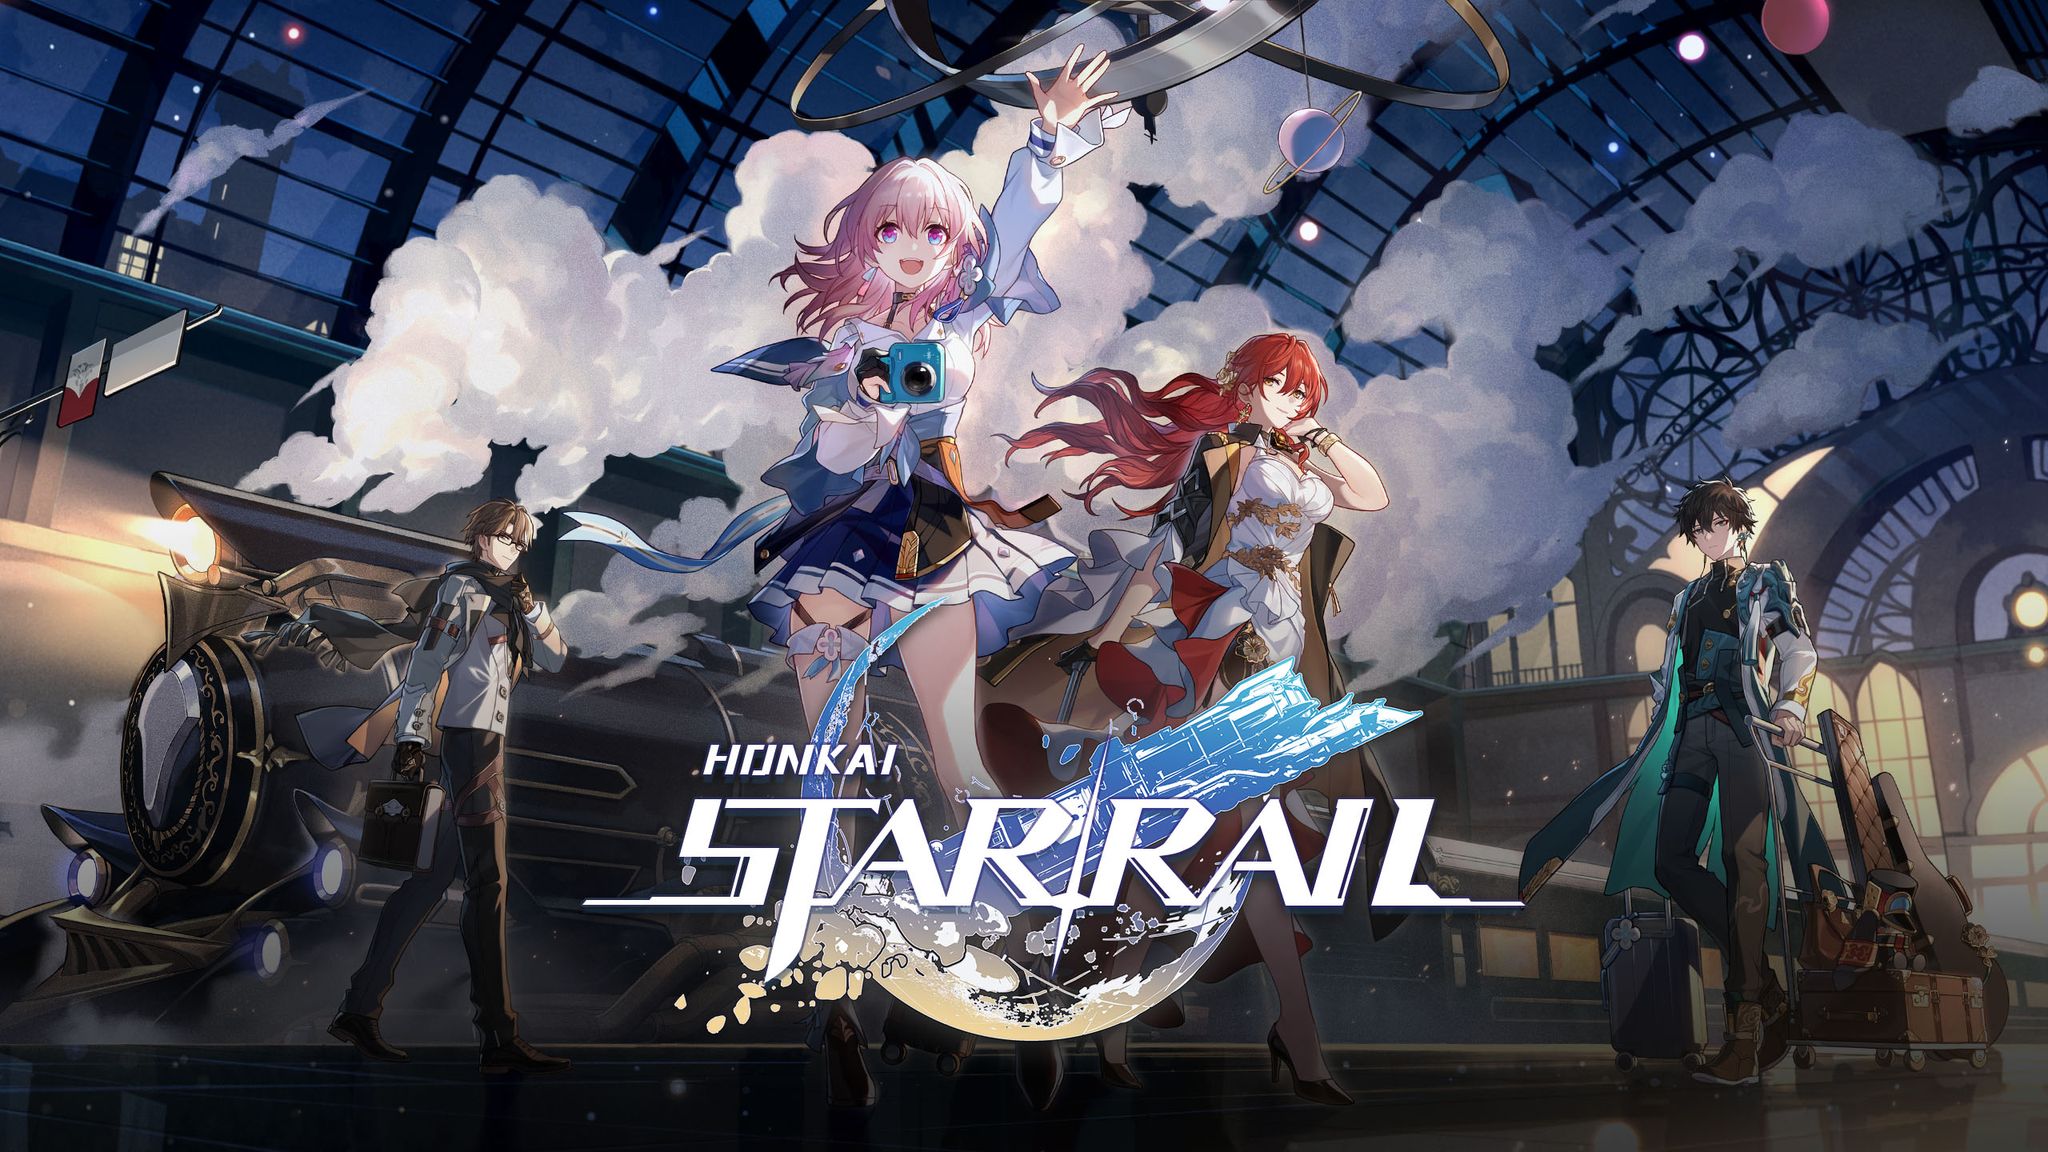 Top nhân vật 4 sao cực kỳ hữu ích trong Honkai Star Rail mà game thủ nên biết